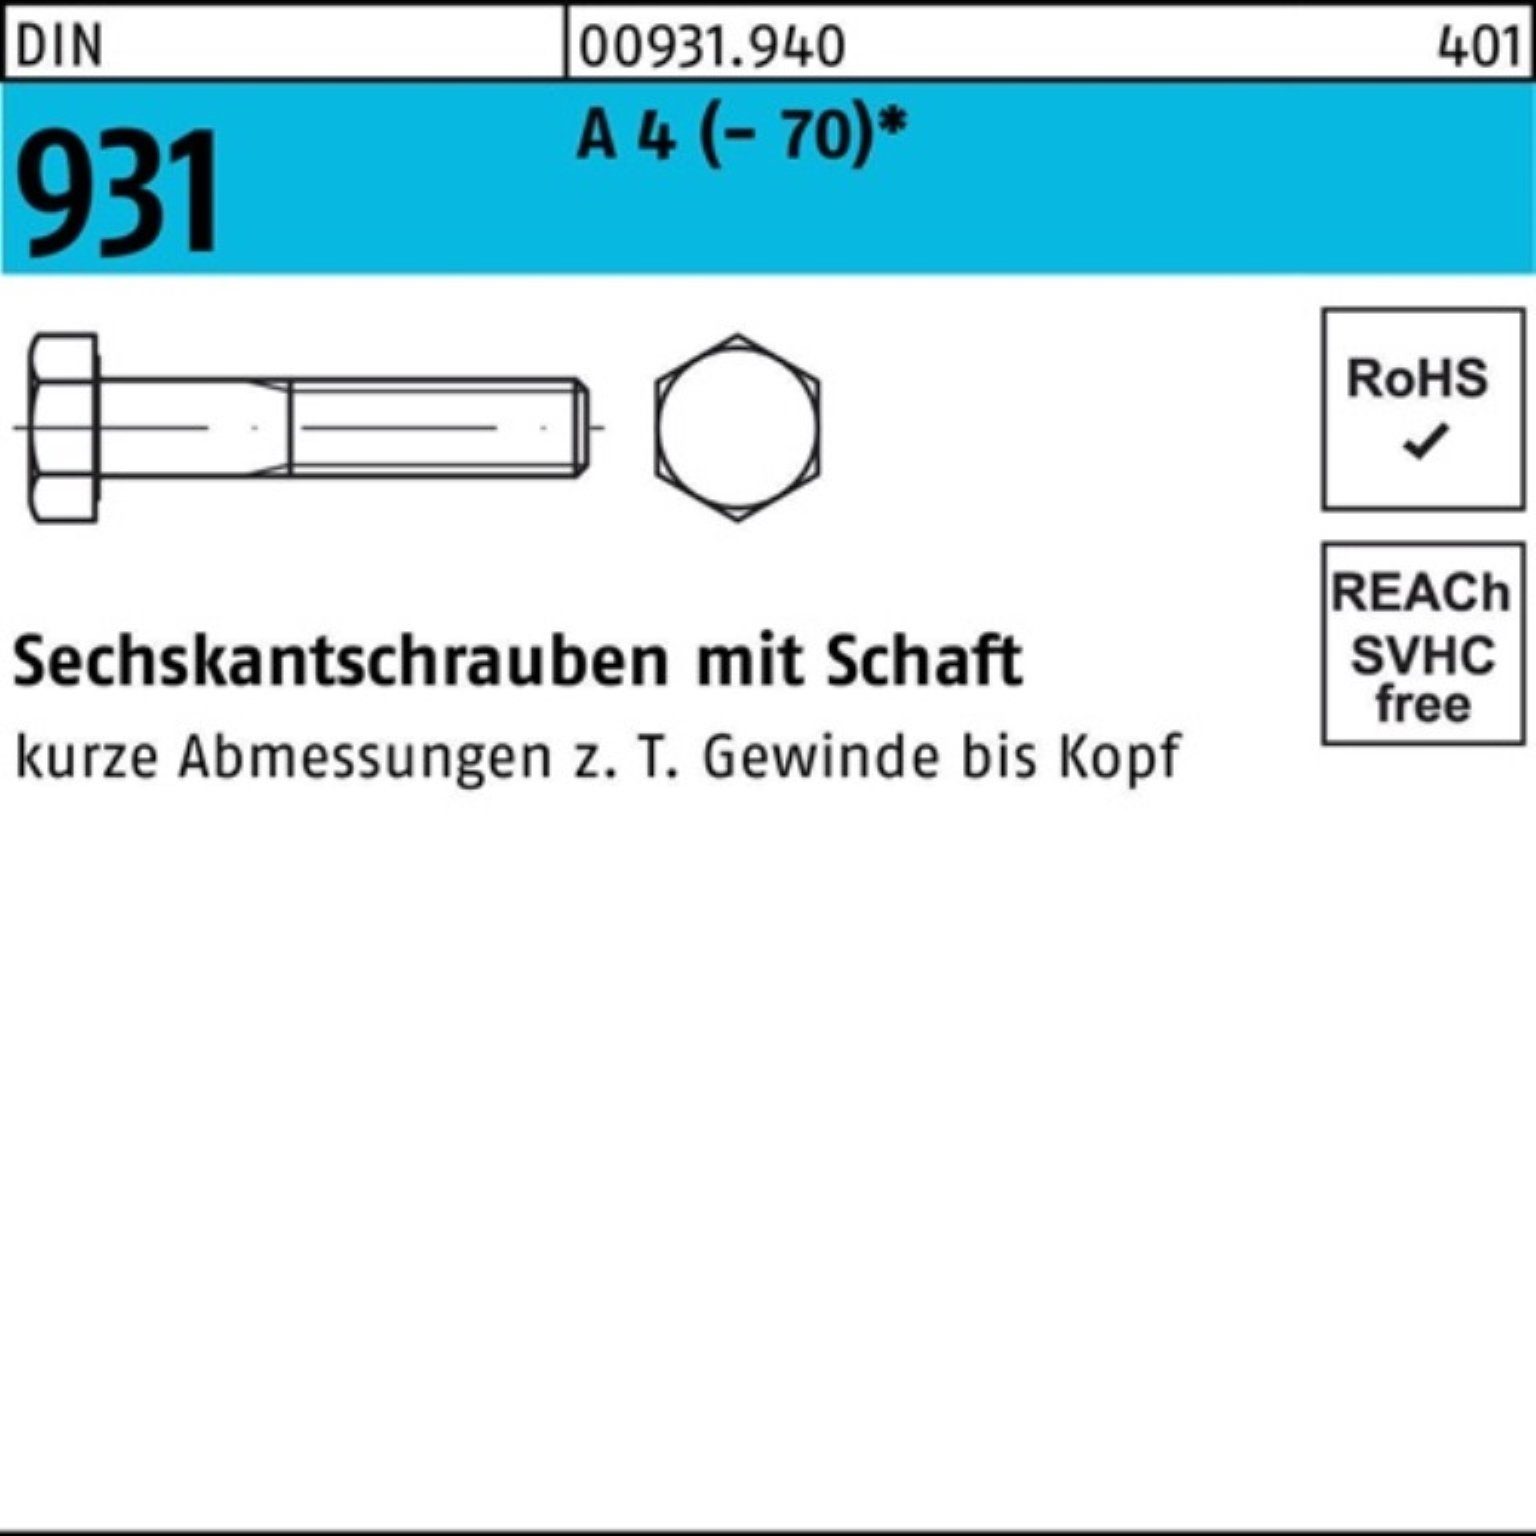 931 100er Sechskantschraube Pack Reyher A 1 DIN 220 Stü Schaft 4 (70) Sechskantschraube M33x